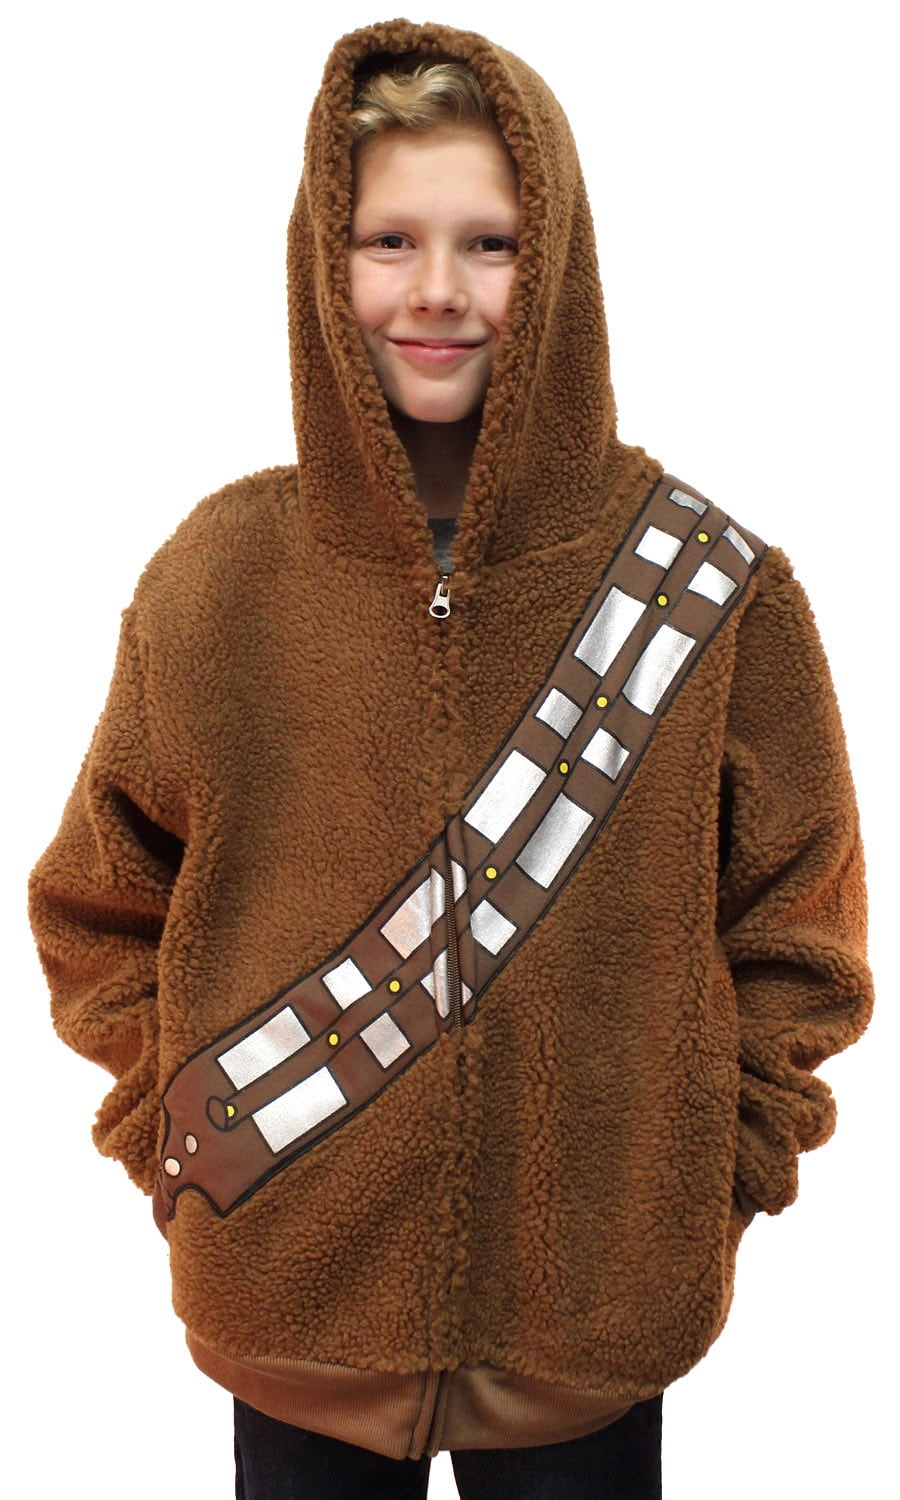 Chewbacca Wookie Sweatshirt Hoodie Costume Style Pullover Boys Star Wars 